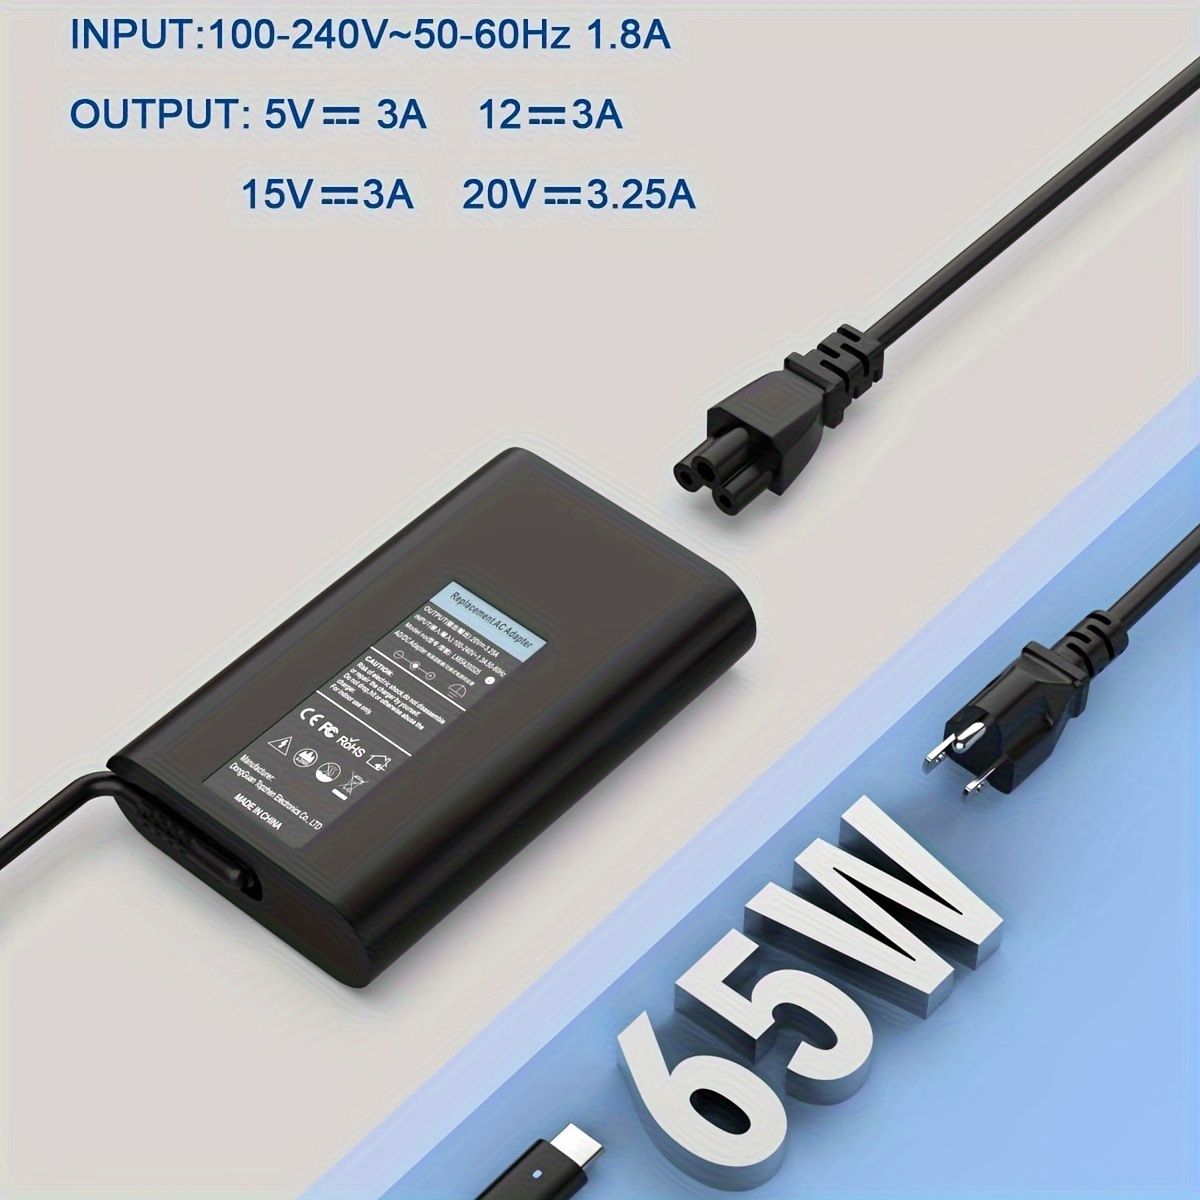 Adaptateur chargeur secteur HP, USB-C, de 5V à 20V, 65W, taille